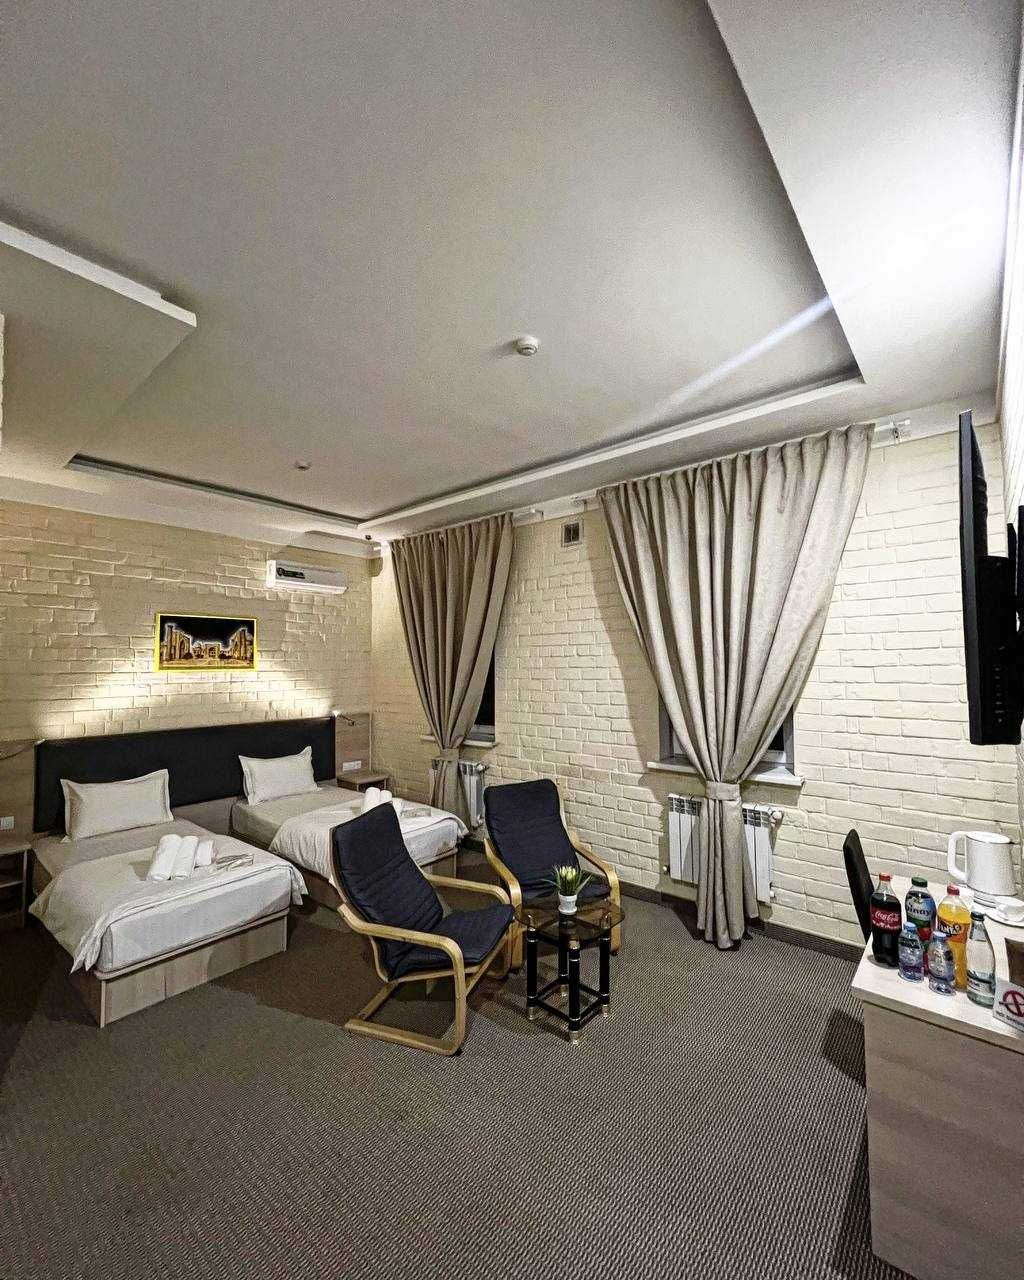 Al Arda Mehmonxona/ Гостиница / Hotel / Отель в Ташкенте